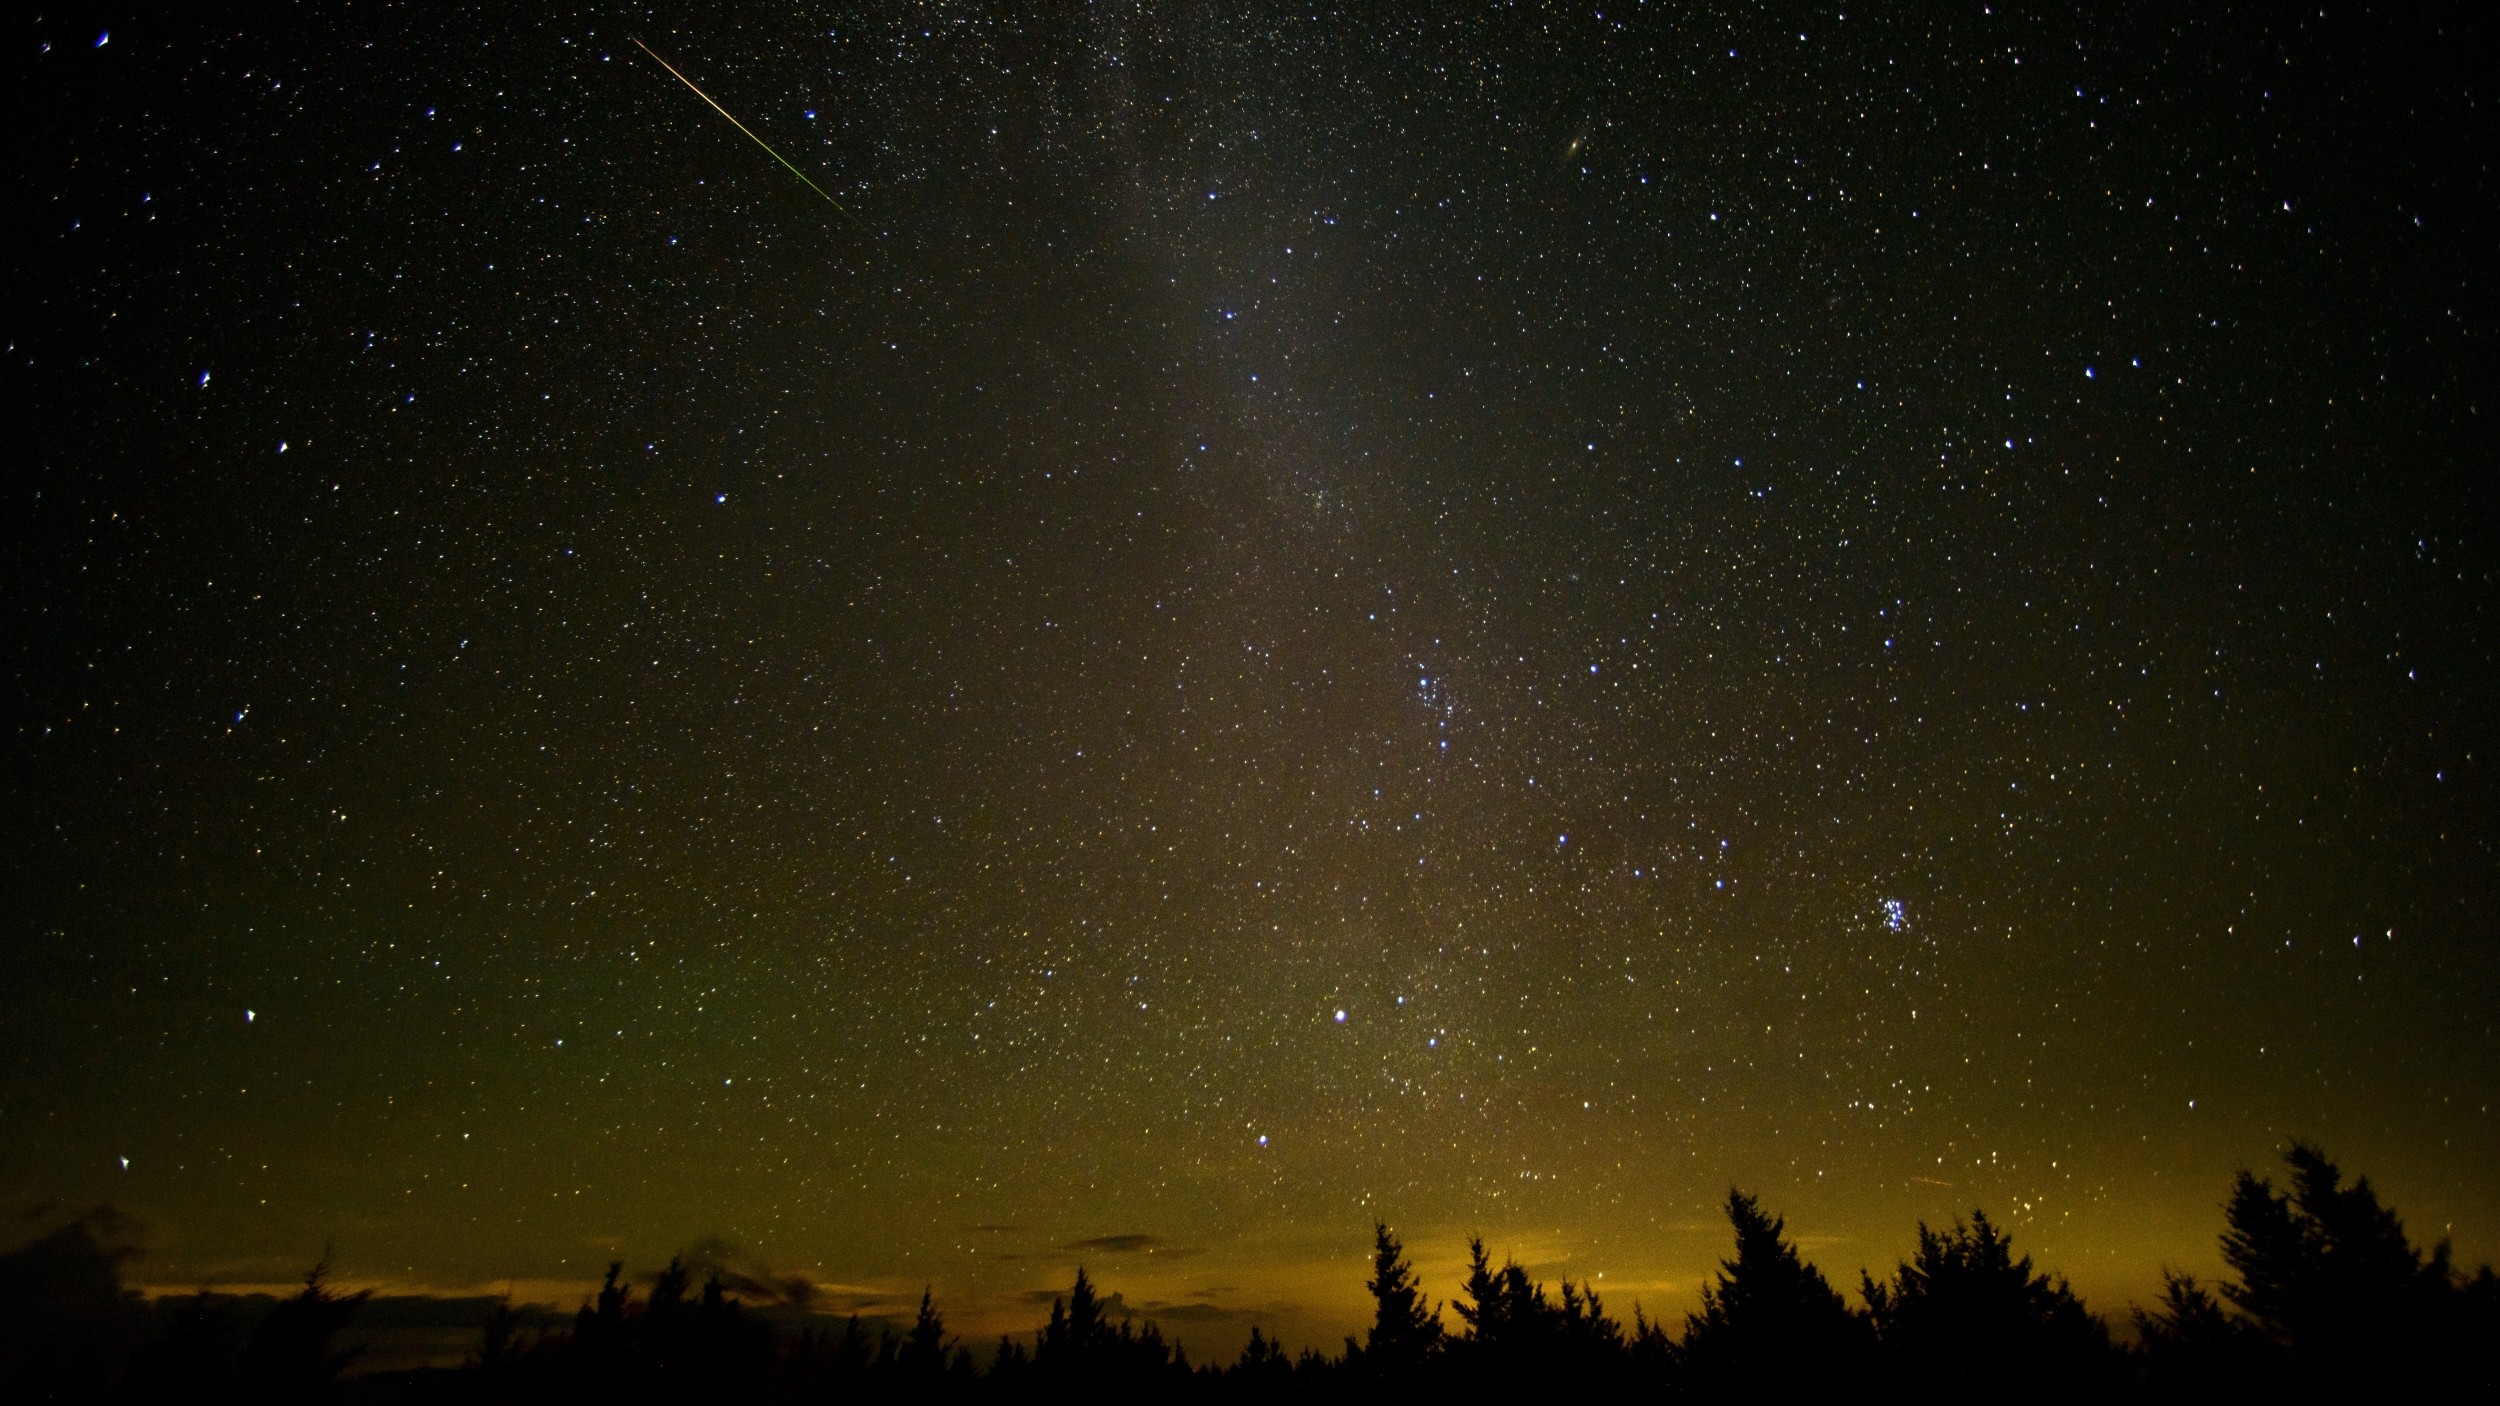 Céu com meteoro cruzando o céu durante a chuva de meteoros Perseidas. Imagem: Bill Ingalls/<a href="https://www.nasa.gov/">NASA</a>